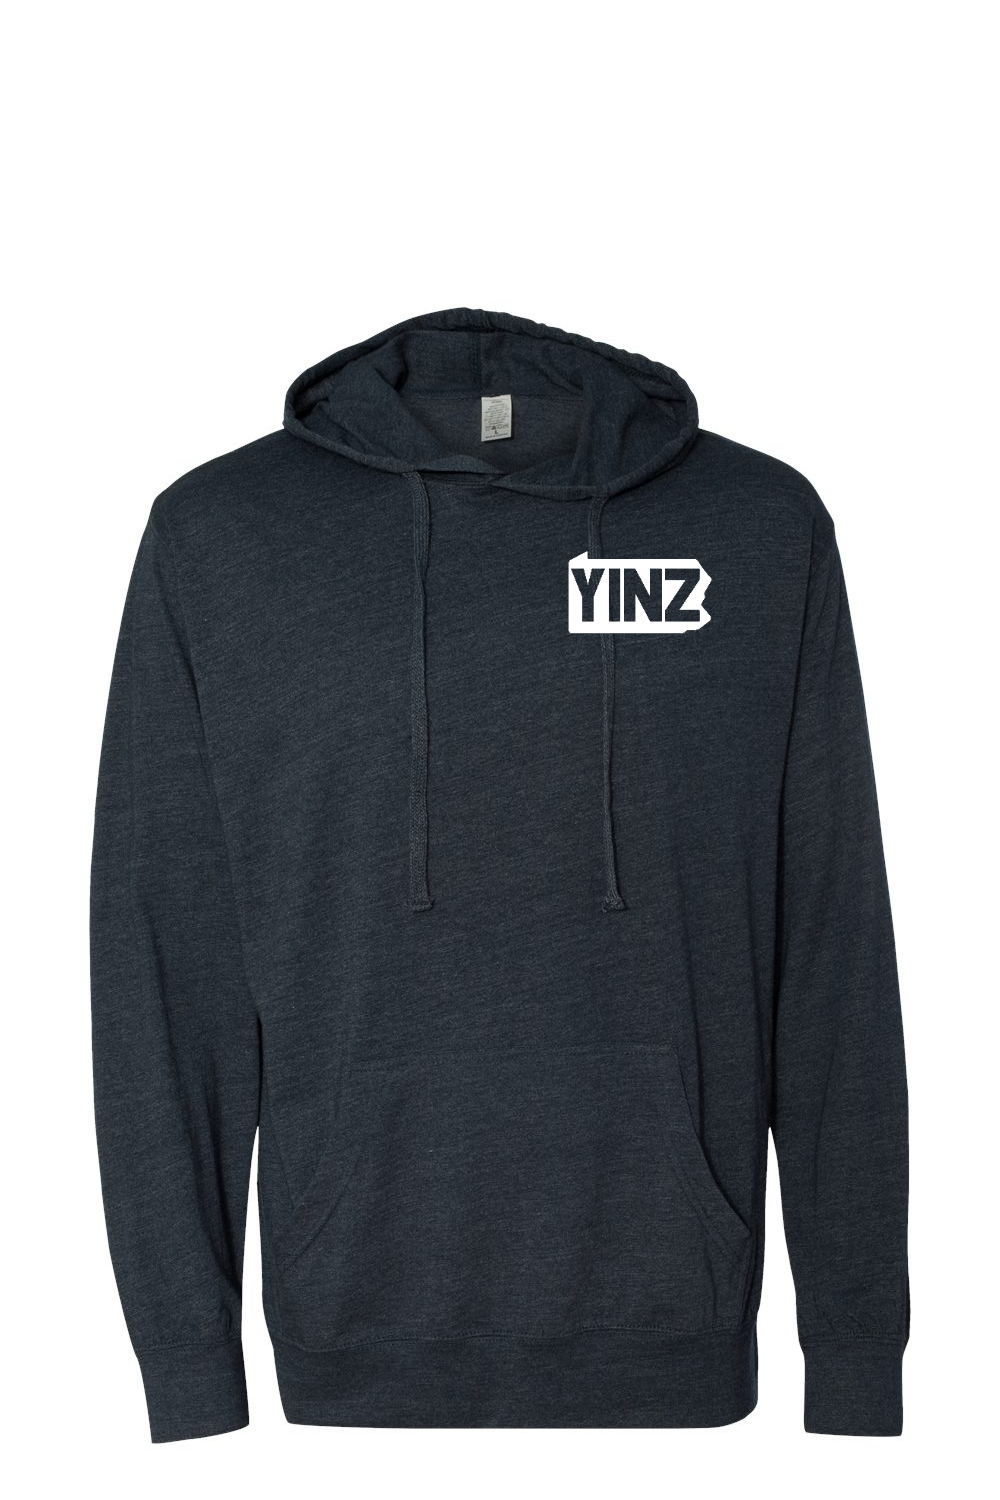 Yinzylvania - Hooded Pullover T-Shirt - Yinzylvania